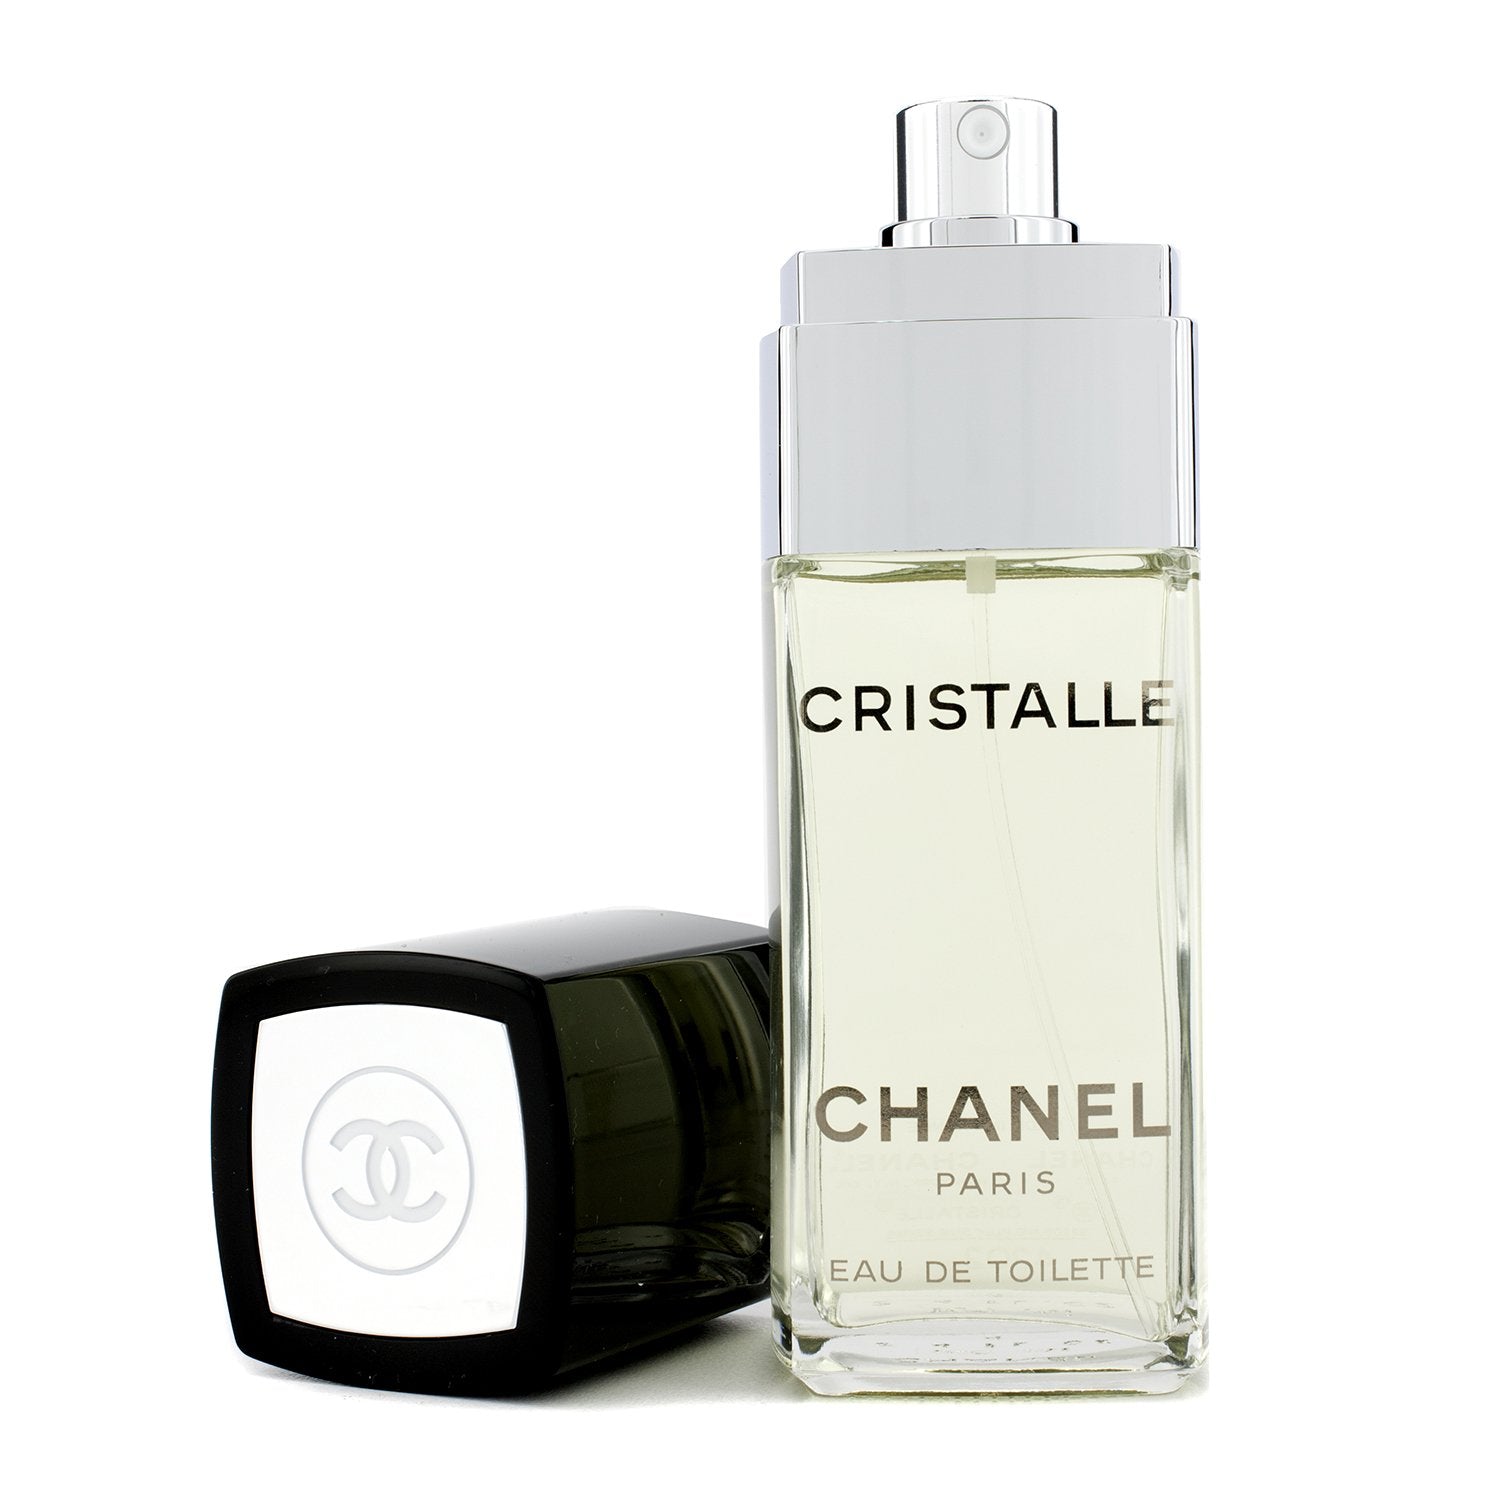 Chanel Cristalle Eau Verte Eau de Toilette Spray for Women, 3.4 oz